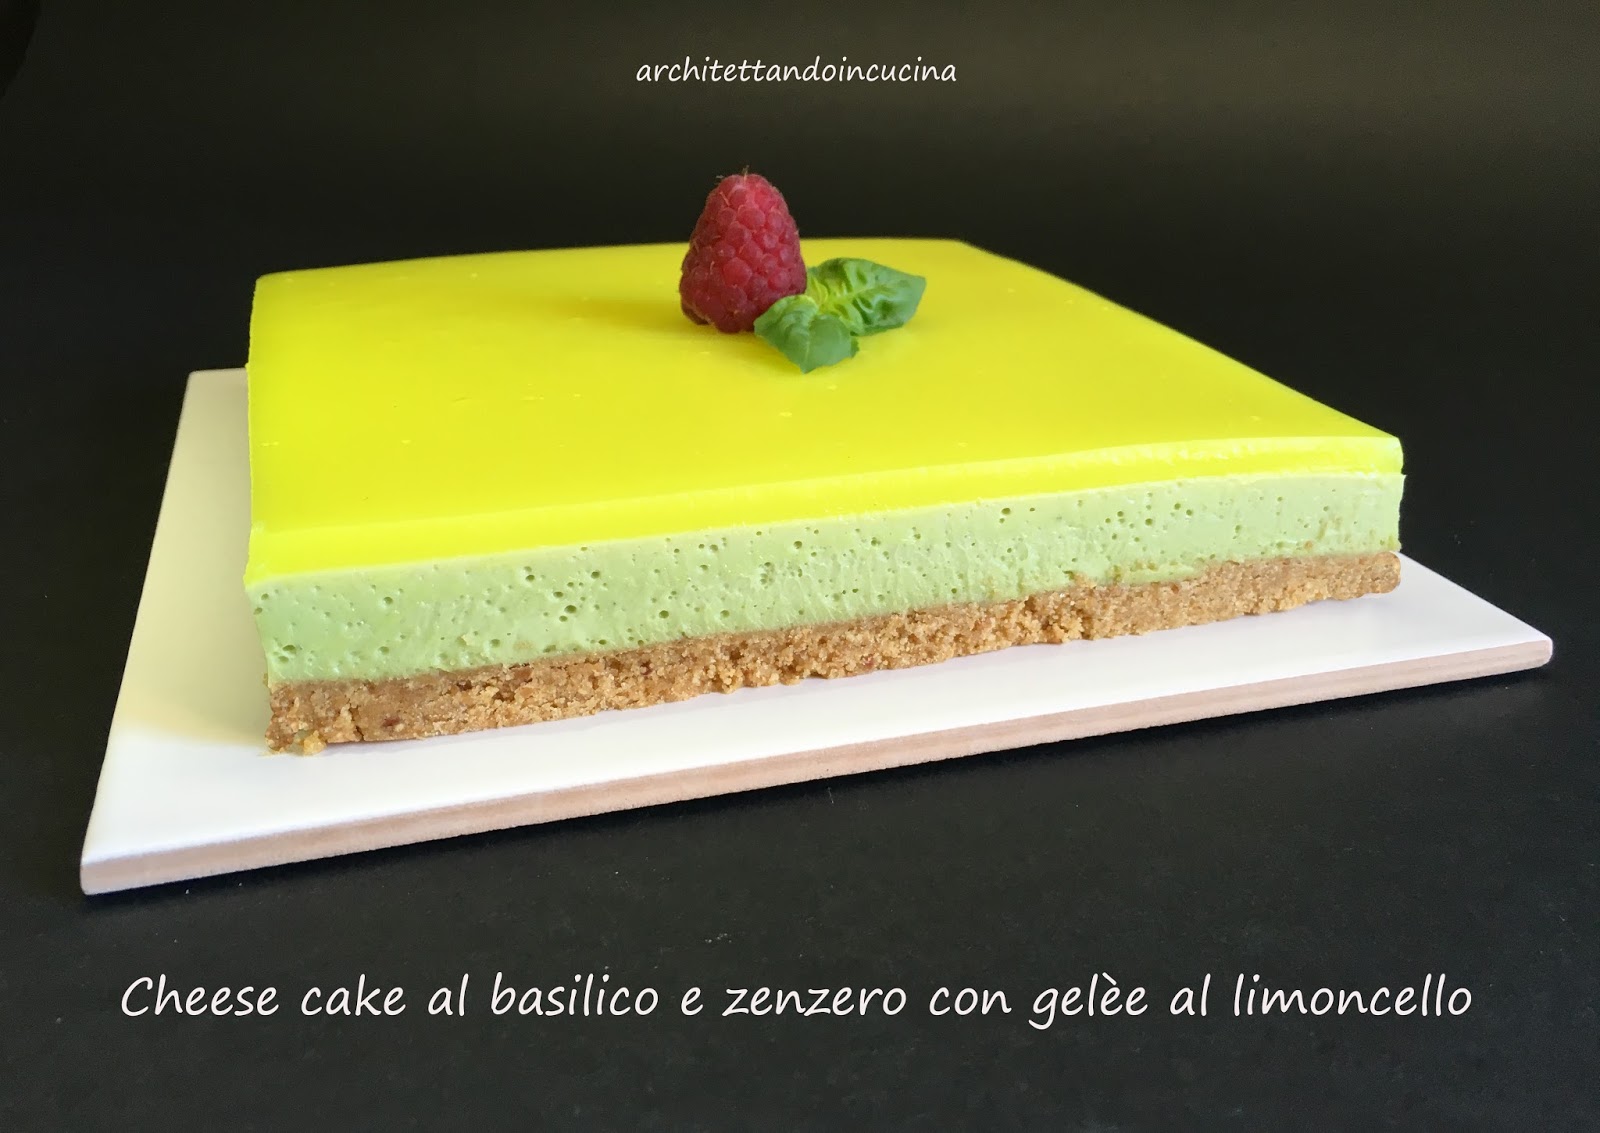 Cheese Cake Al Basilico E Zenzero Con Gelee Al Limoncello Per L Mtc Di Maggio Architettando In Cucina